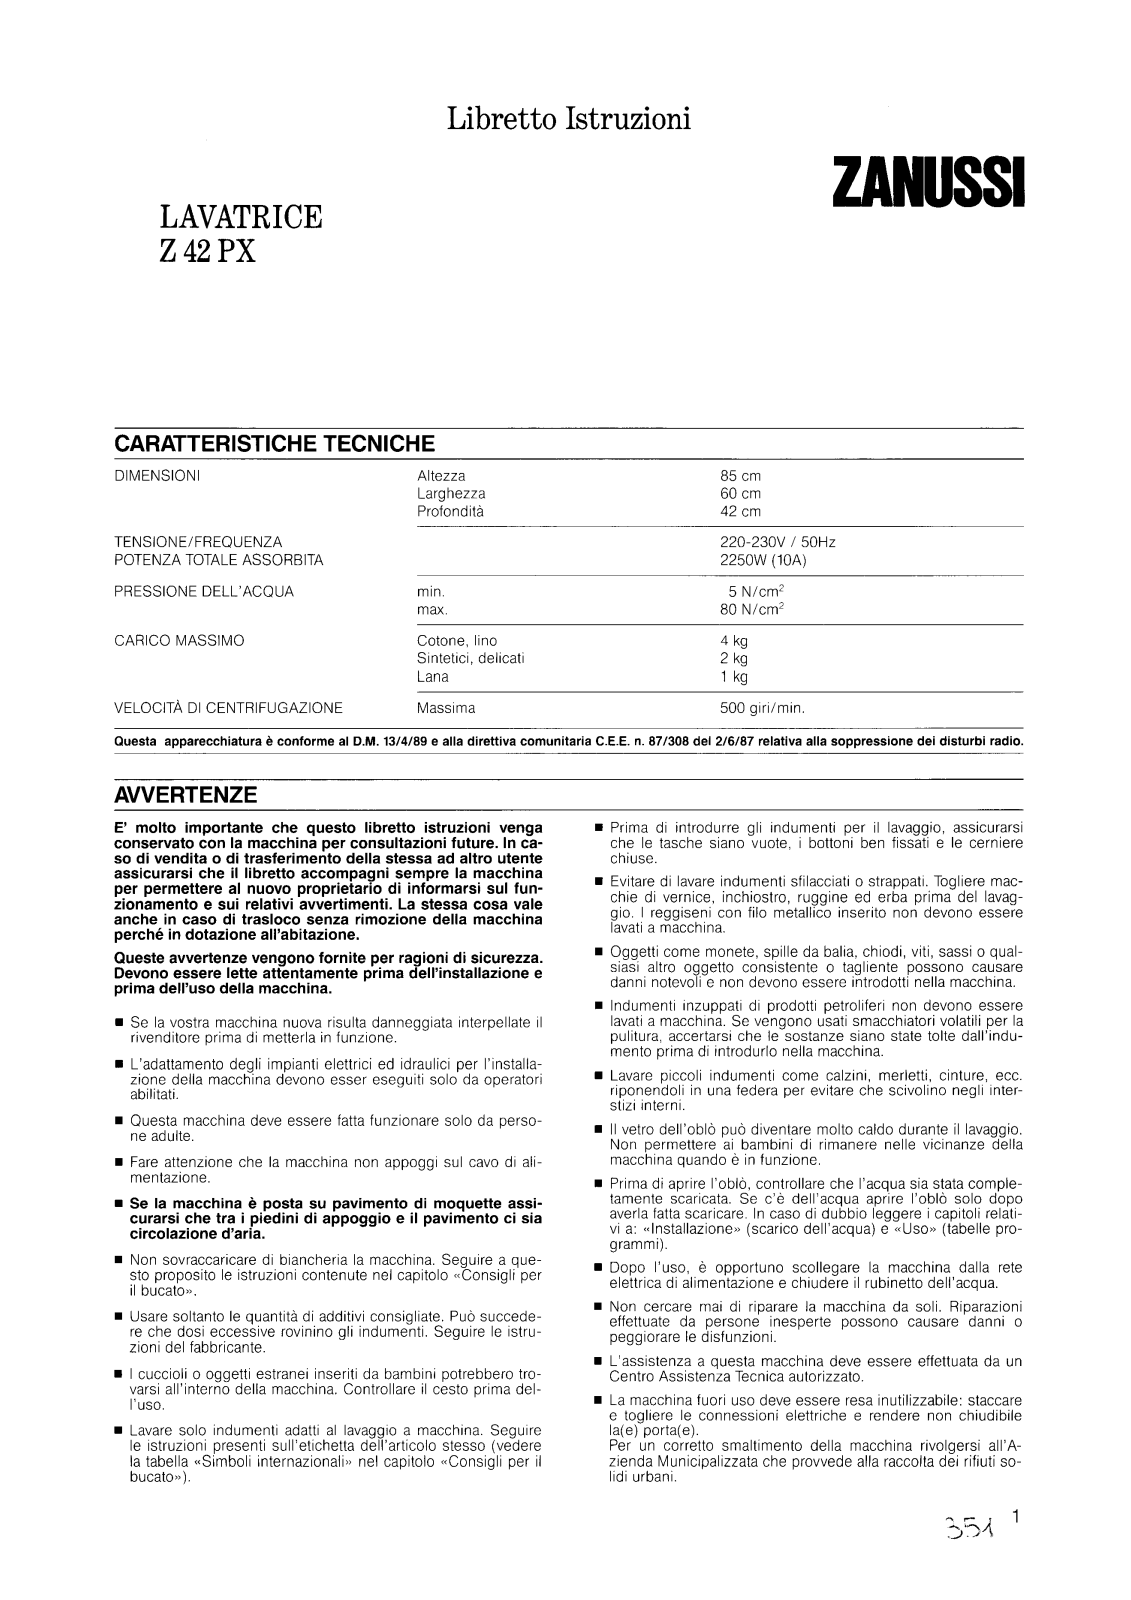 Zanussi Z42PX, FJ903CV User Manual